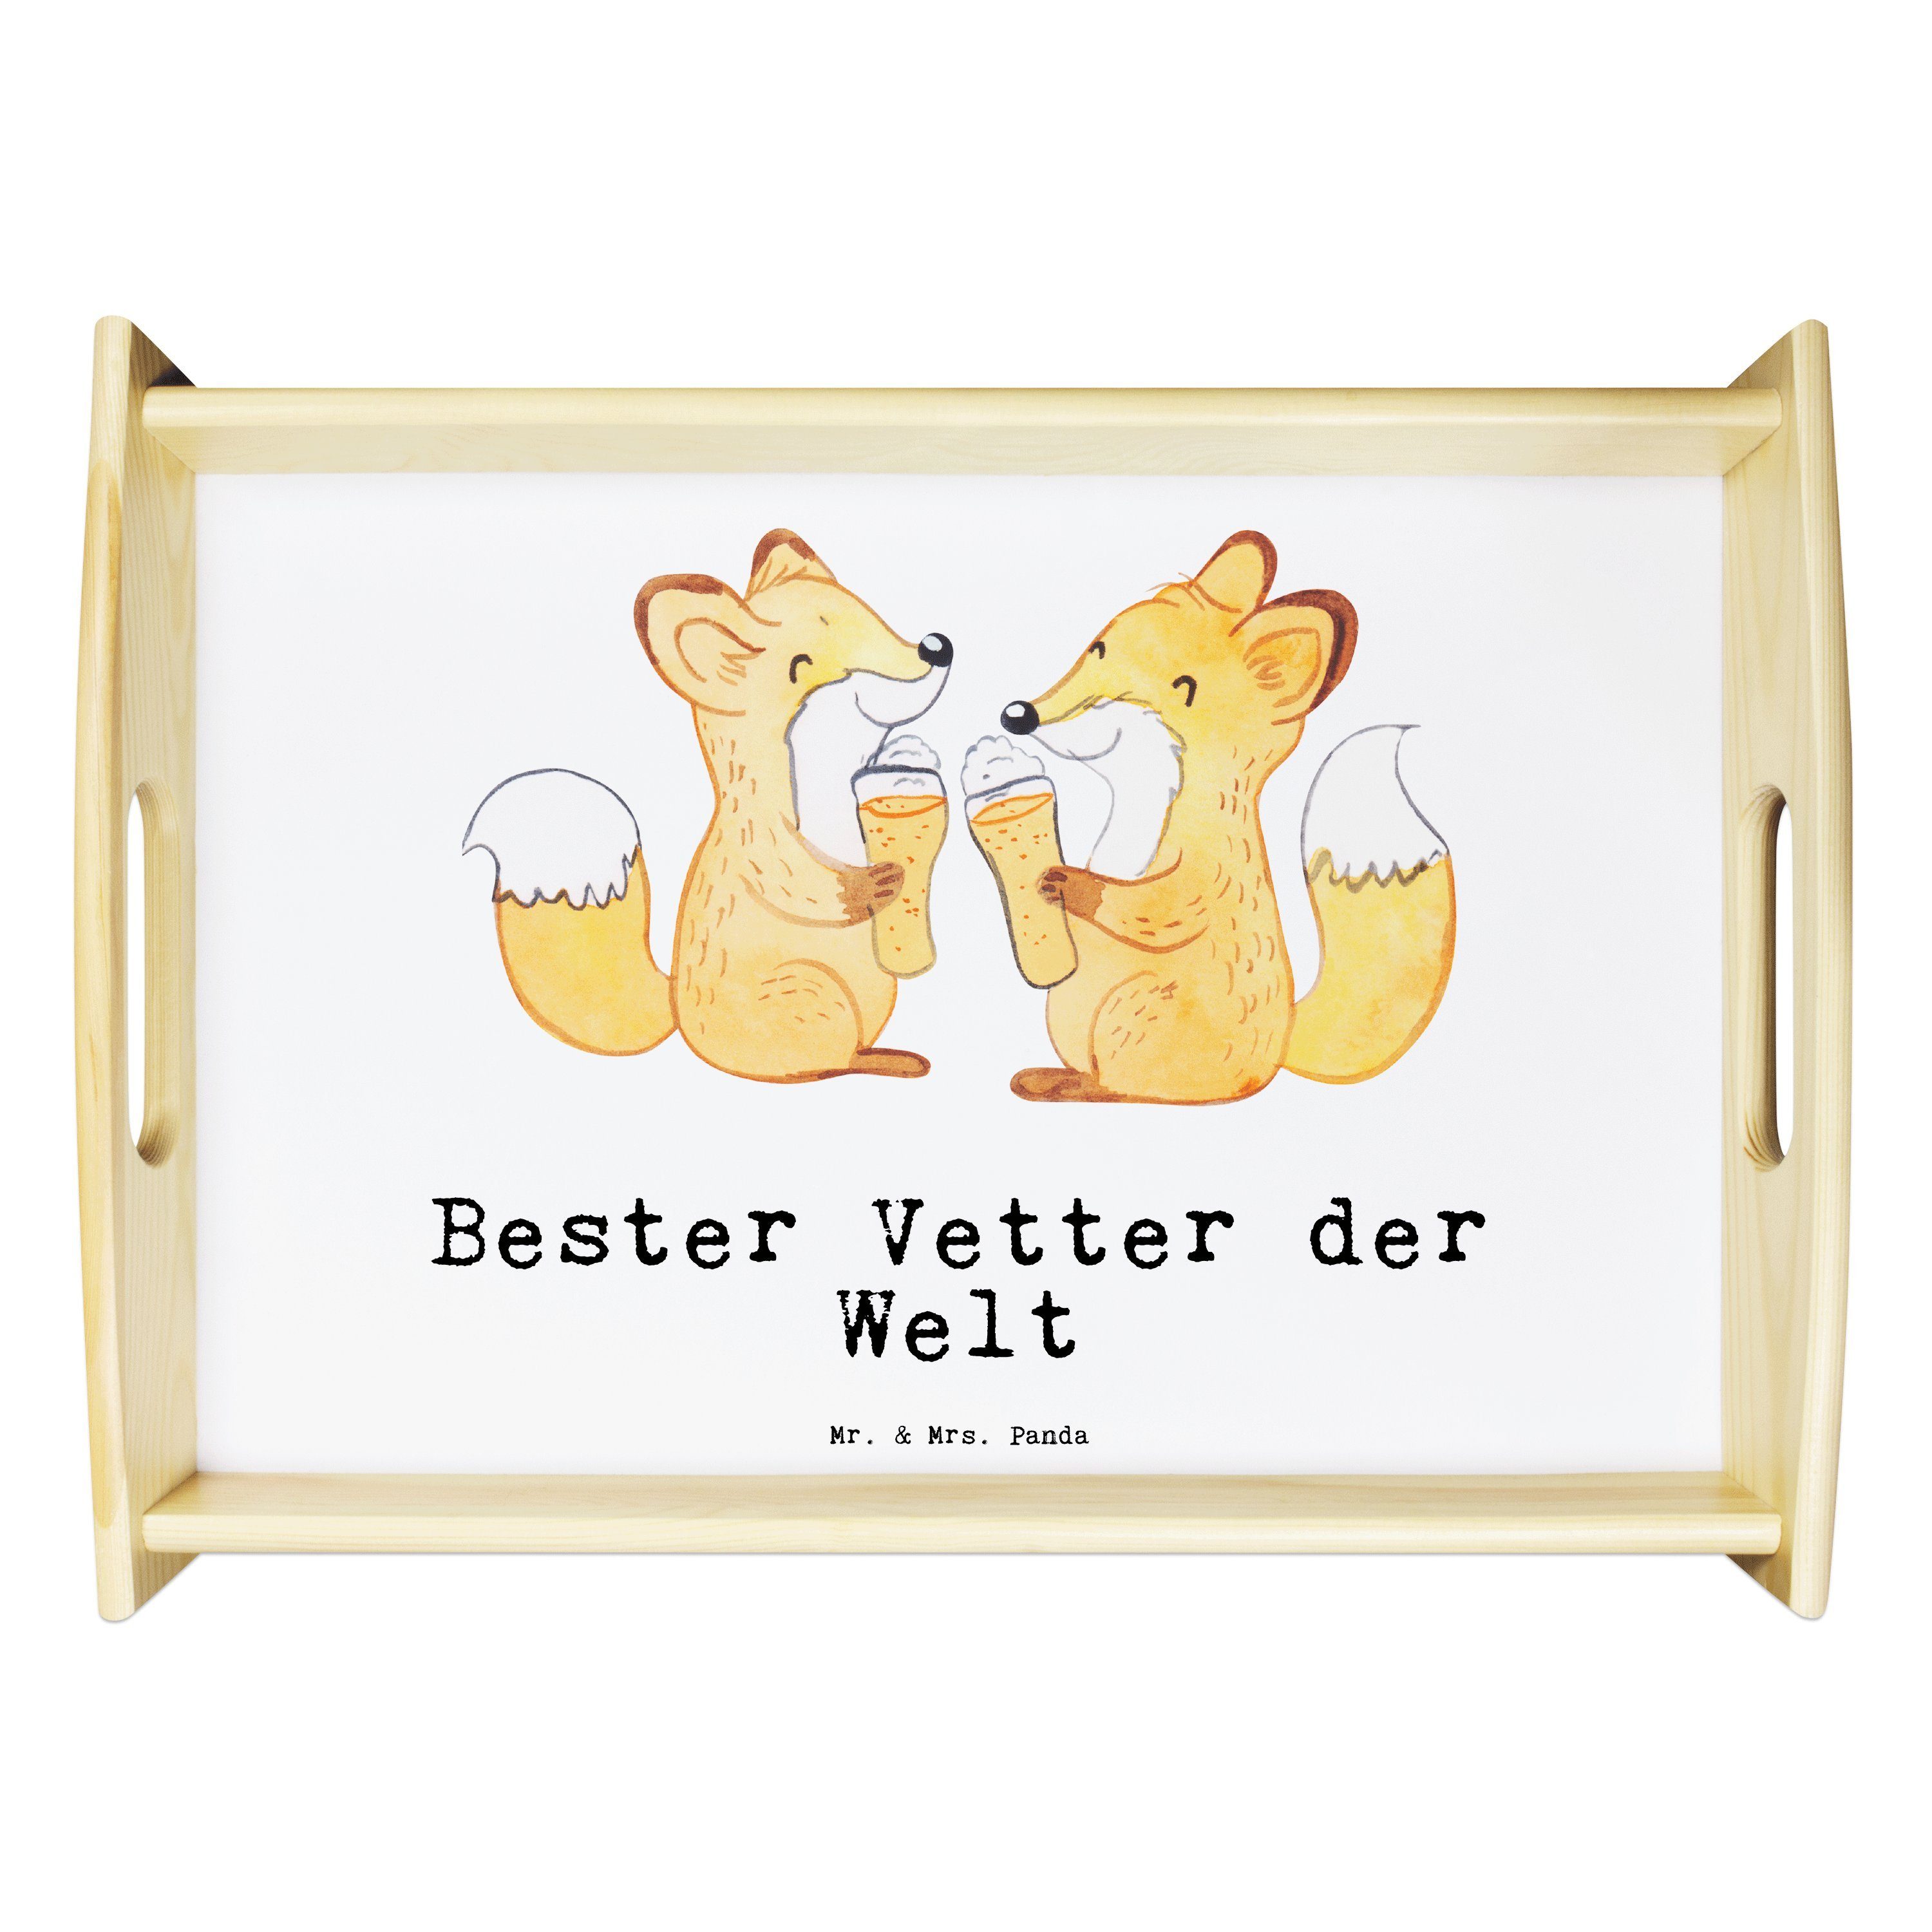 Mr. & Mrs. Panda Tablett Fuchs Bester Vetter der Welt - Weiß - Geschenk, Dekotablett, Frühstüc, Echtholz lasiert, (1-tlg)